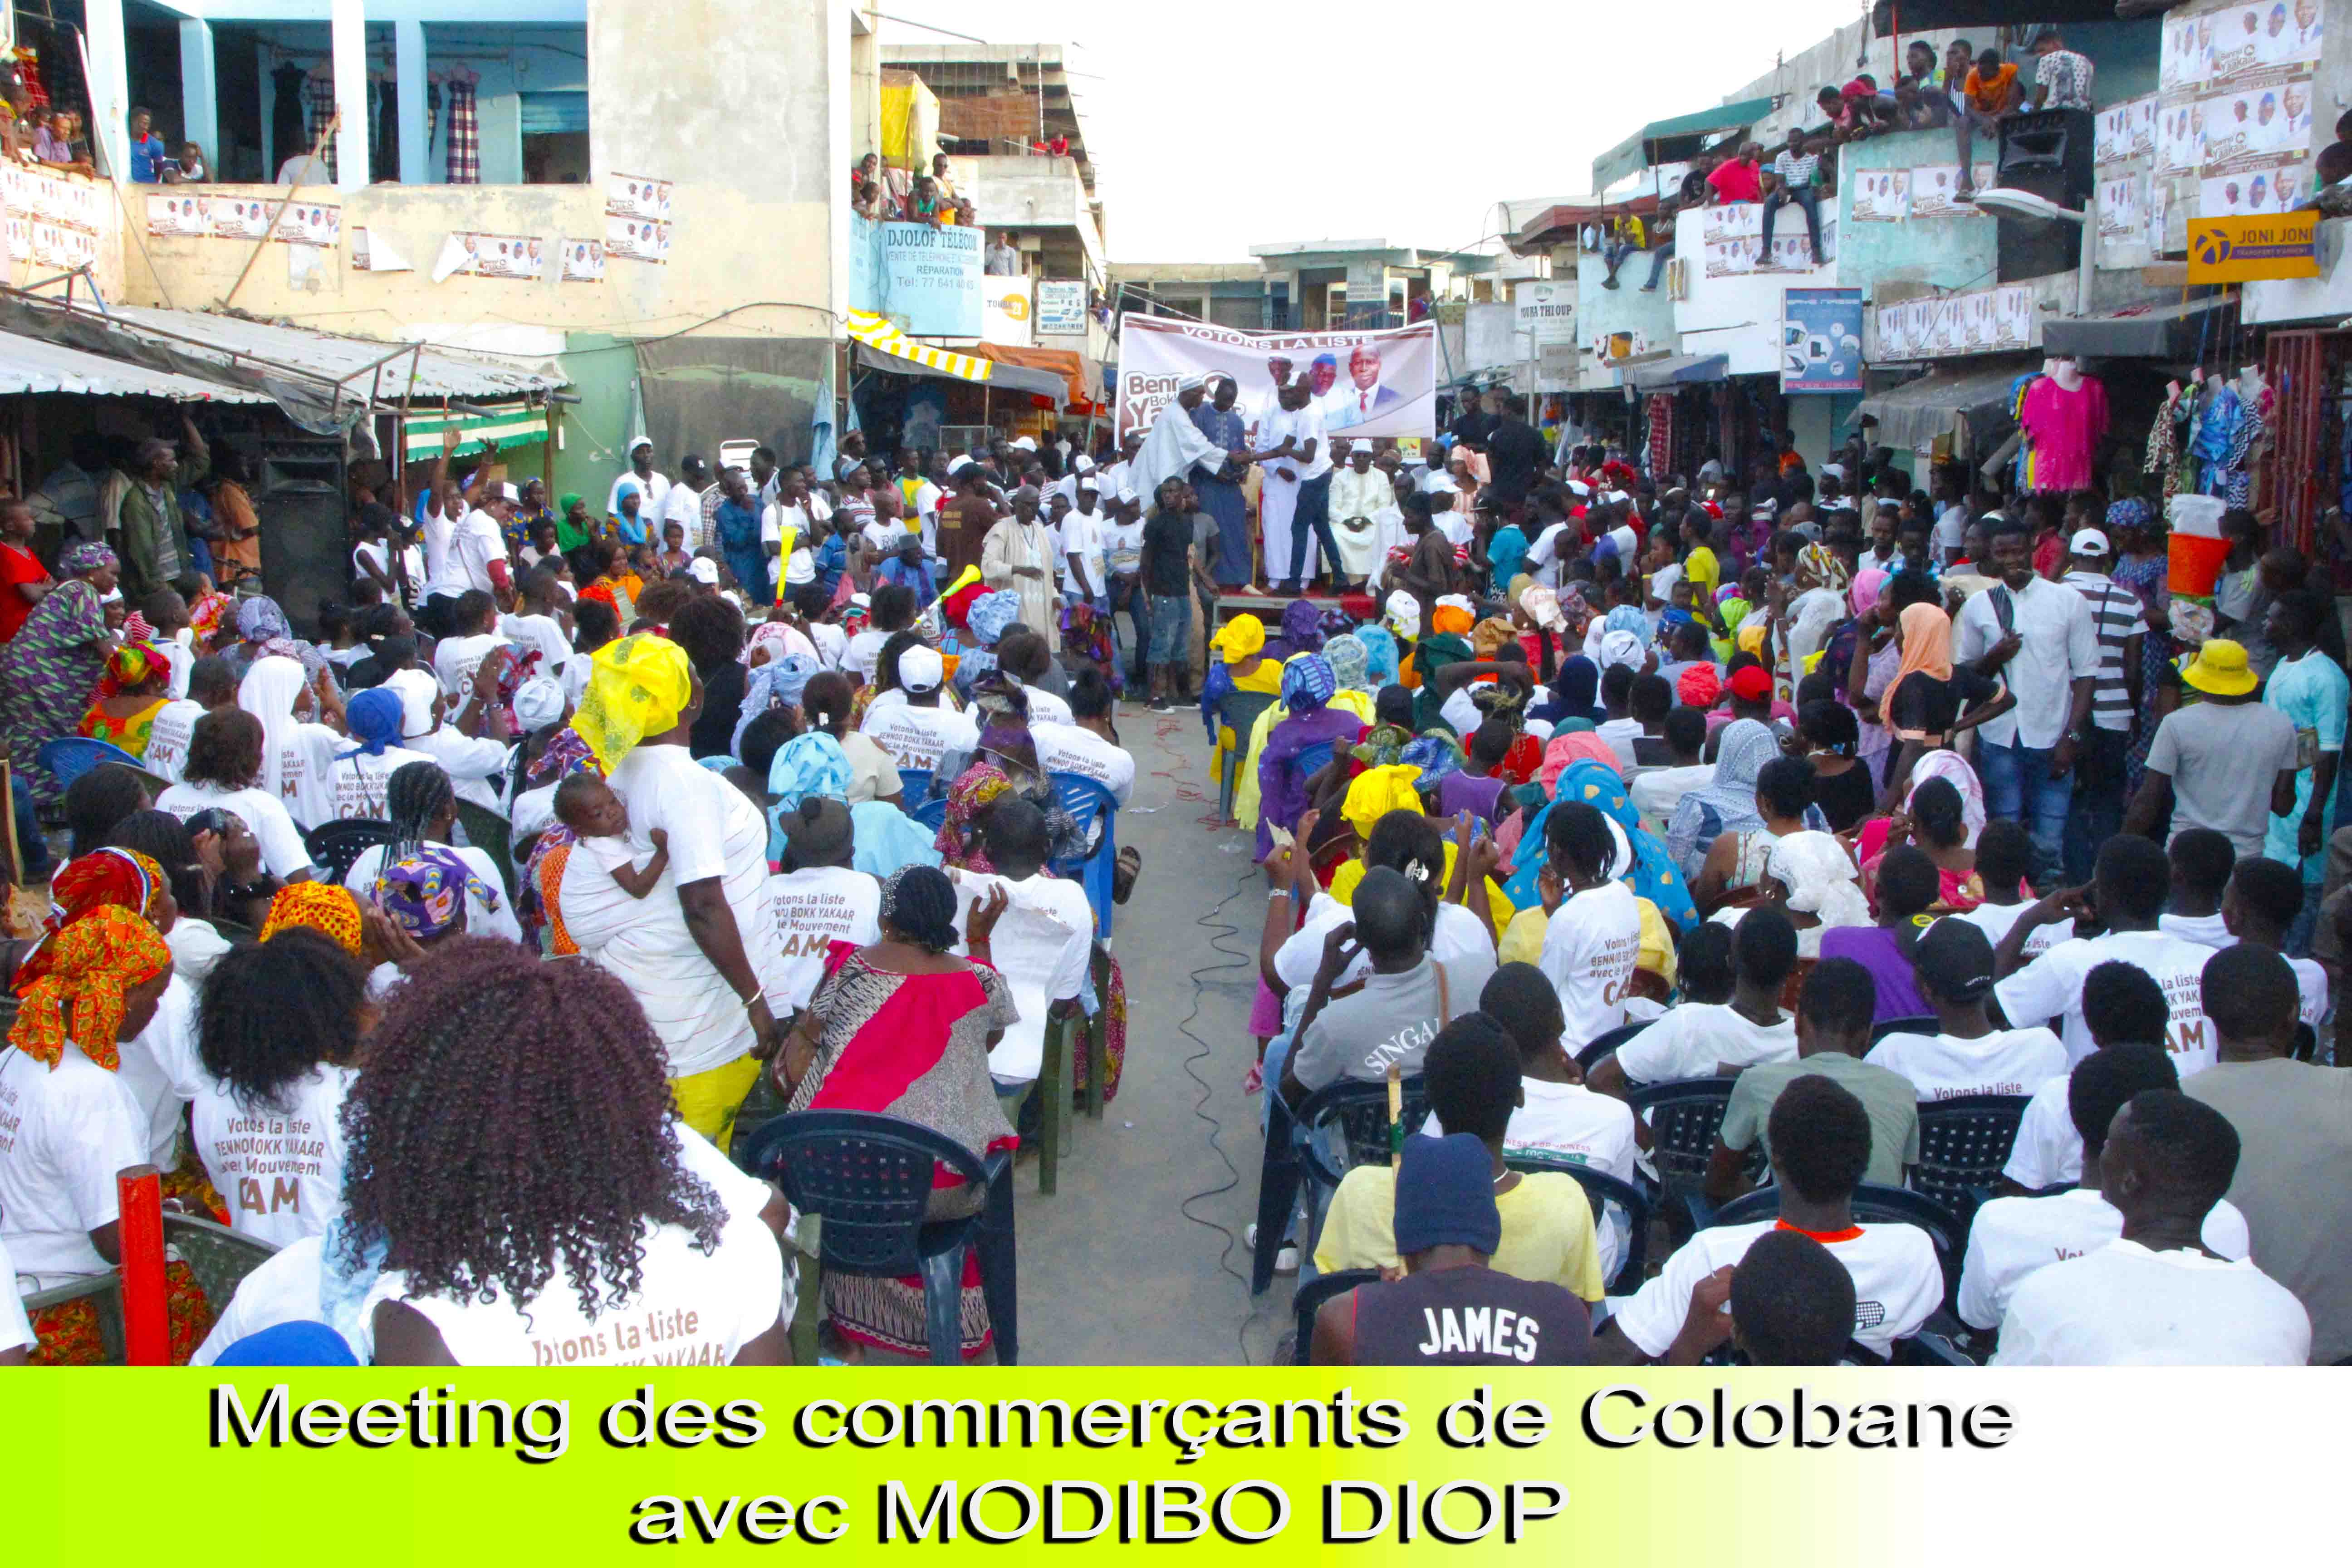 (Photos)  Meeting De Modibo Diop Parain des Jeunes Commerçants De Dakar Au Marché Colobane